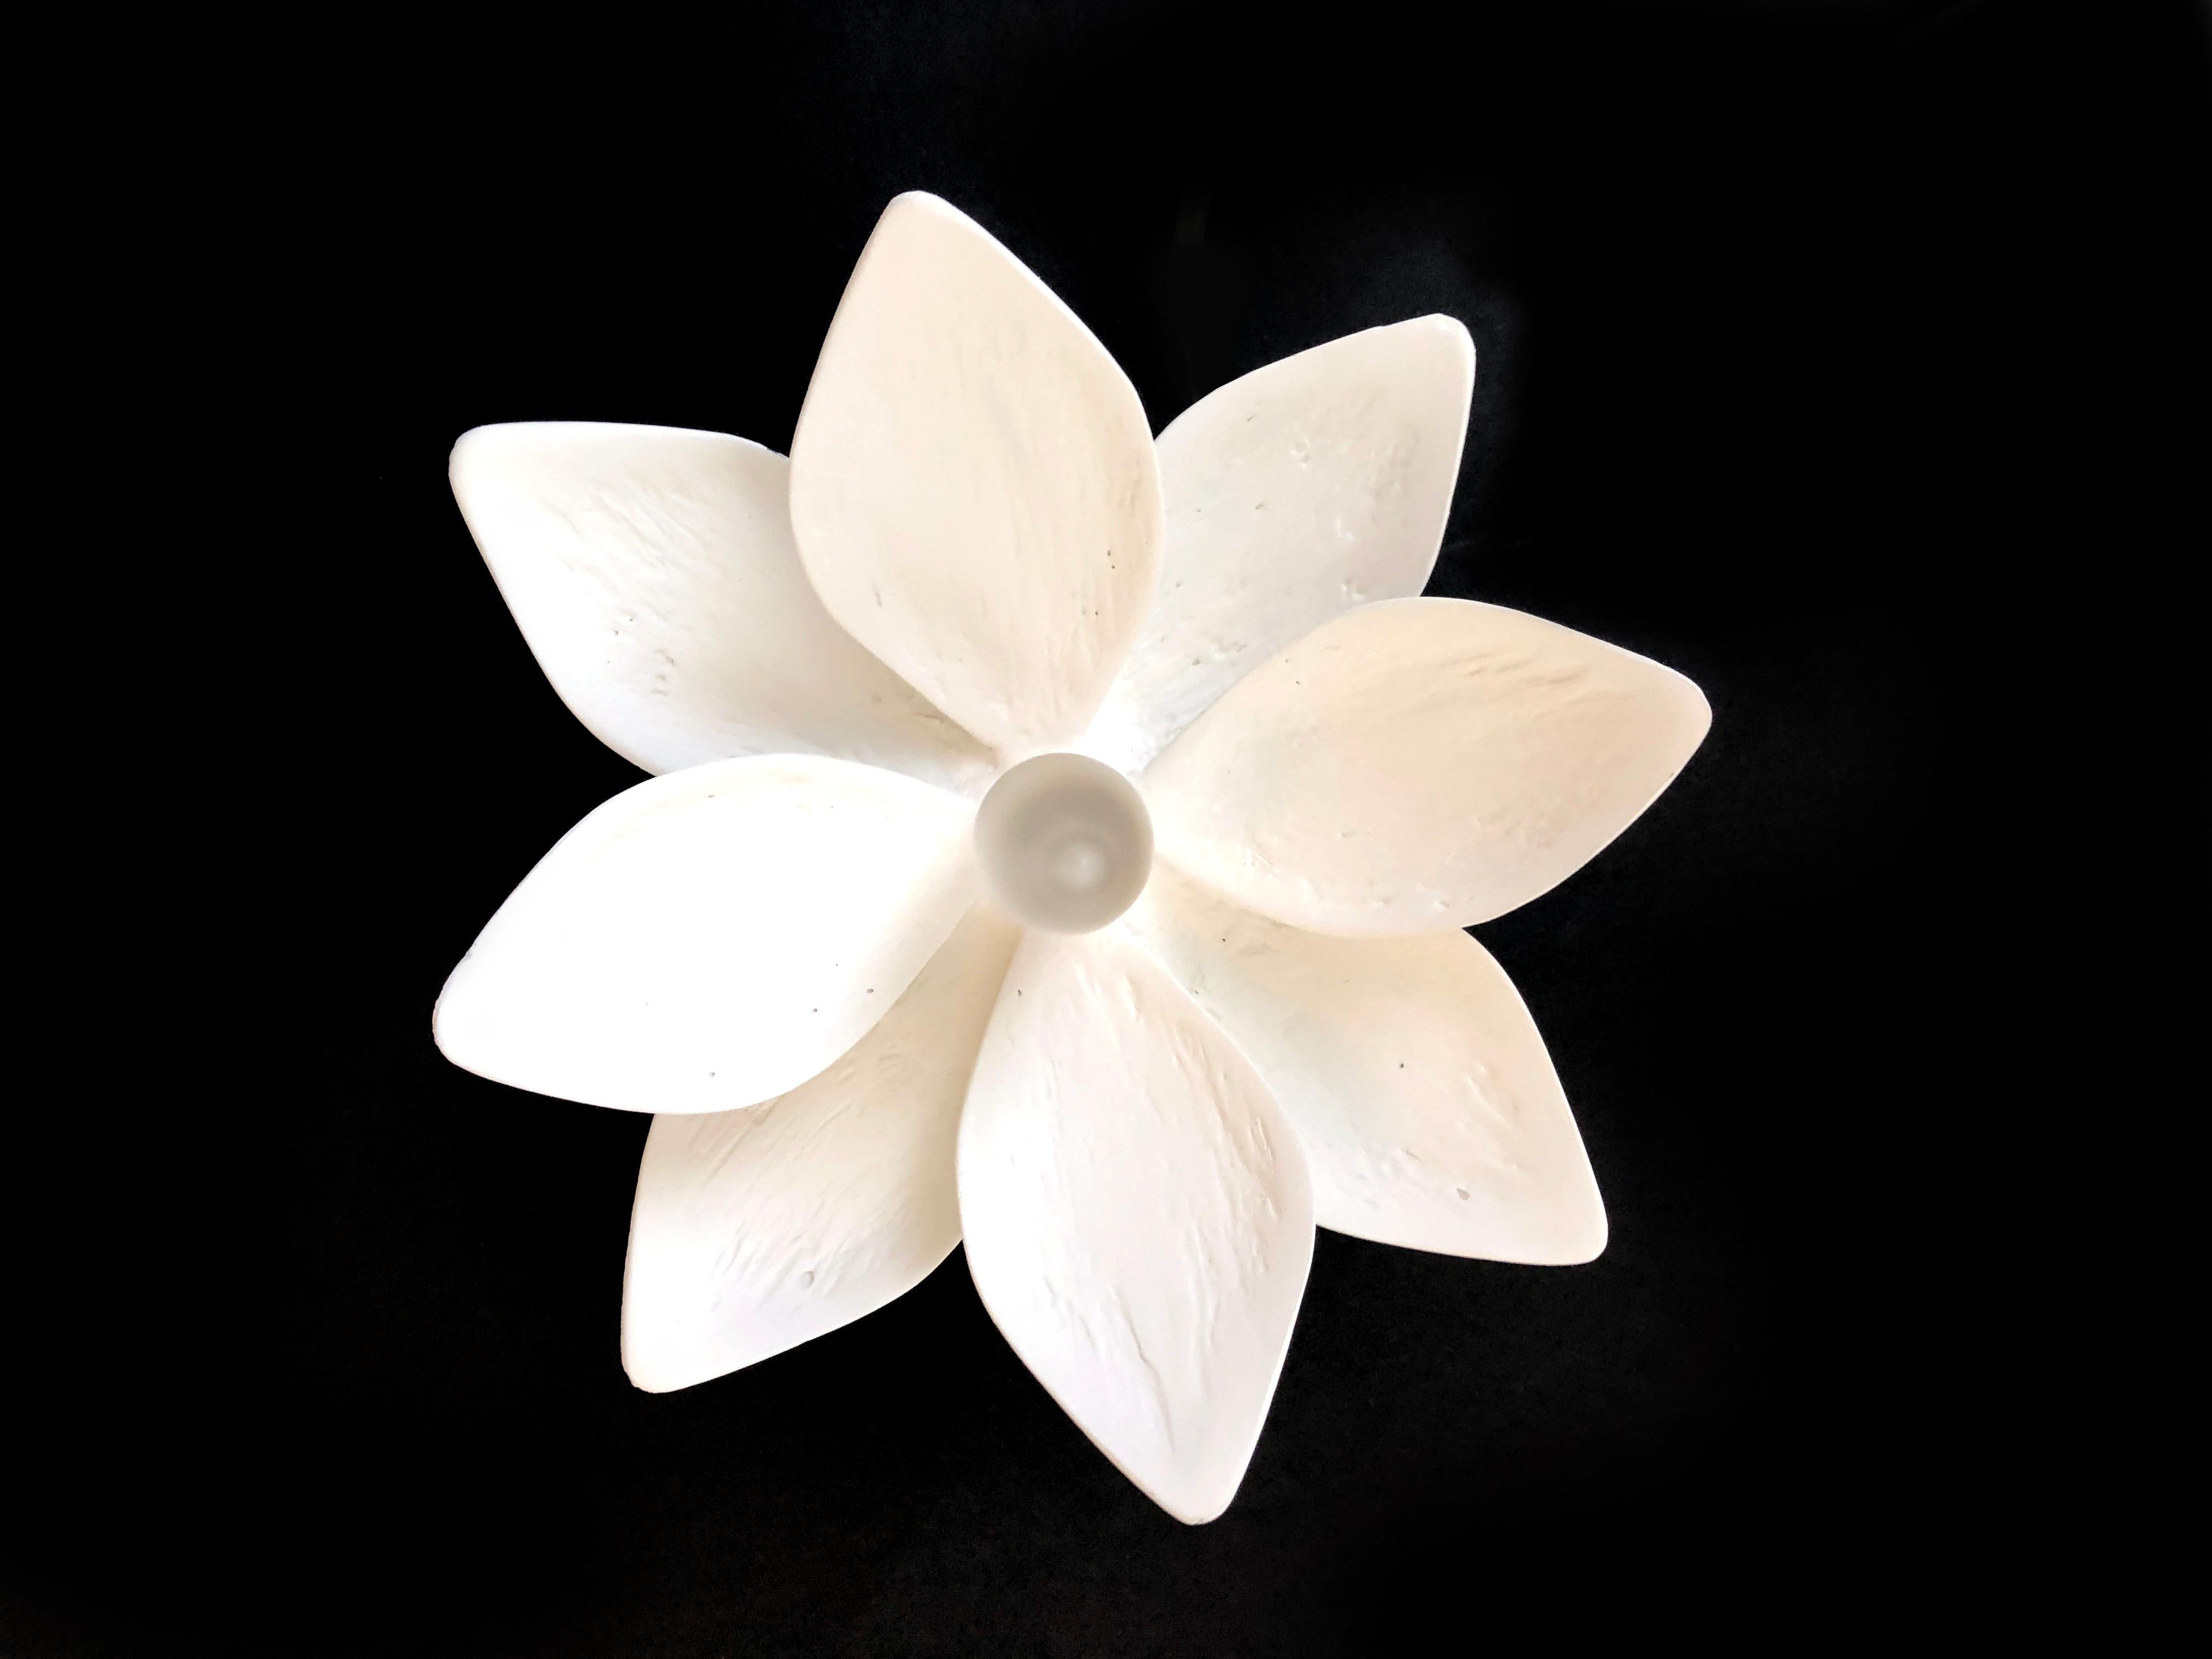 Cette applique simple, mais ornée a une finition en plâtre caractéristique de Paris. Sa fleur de magnolia apportera de la nature à l'intérieur et a été conçue pour compléter notre lustre Vosges. Cette applique polyvalente mettra en valeur la beauté